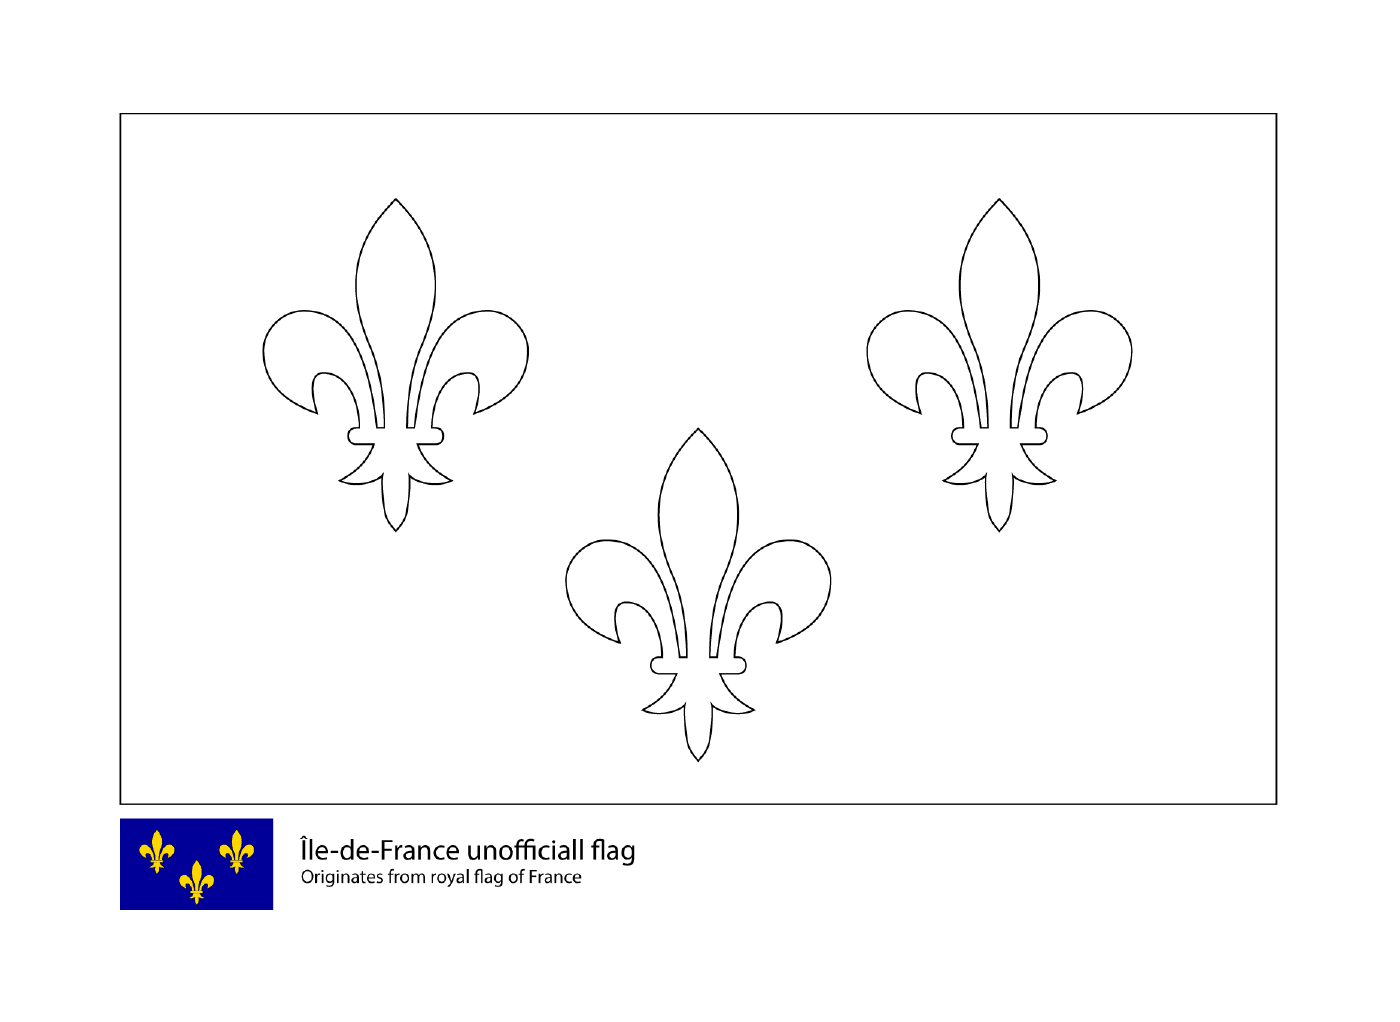 drapeau de lile de france